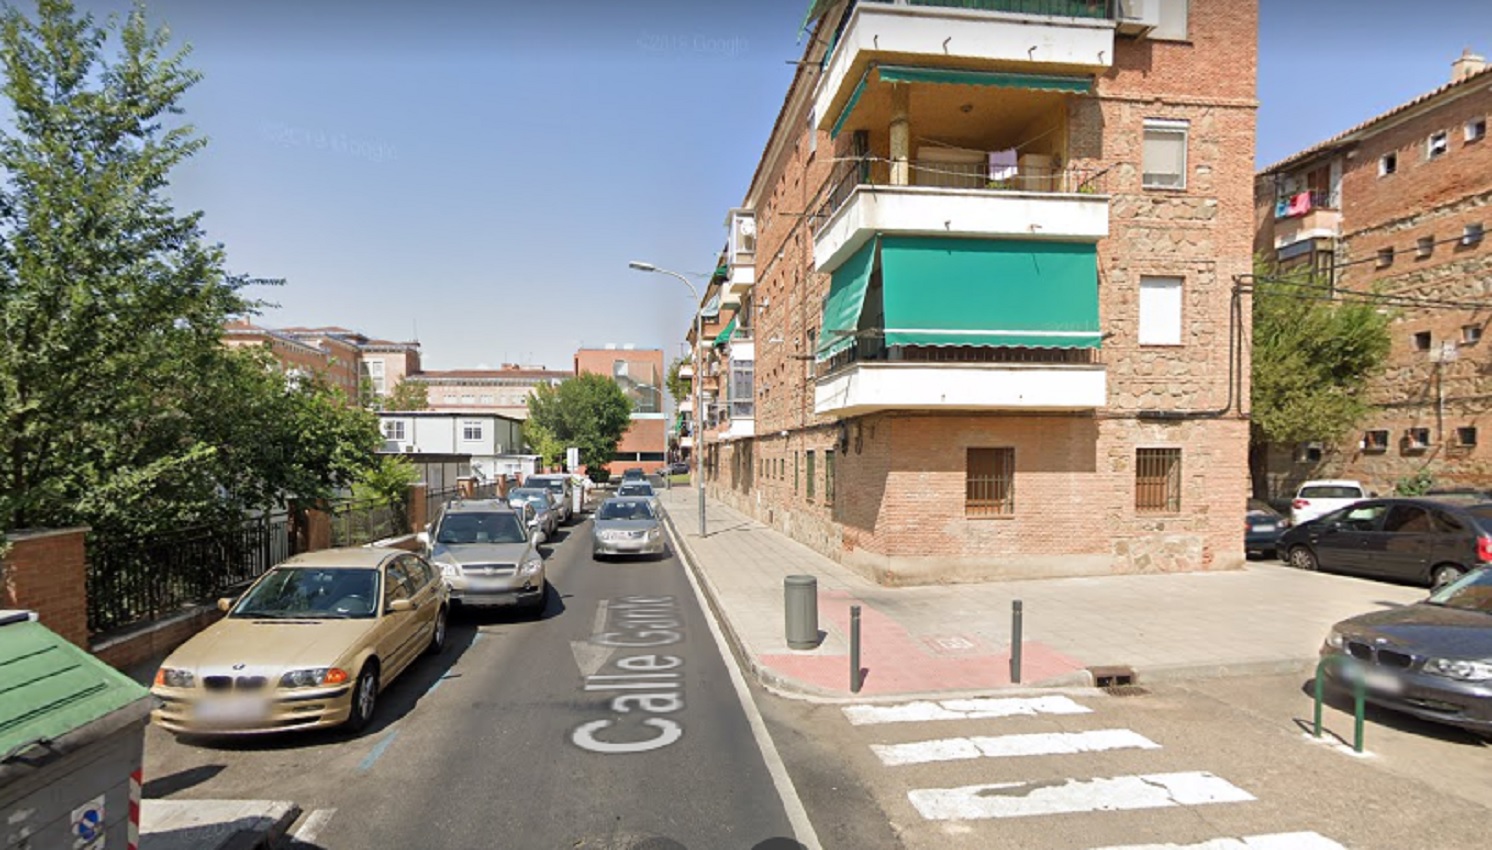 La agresión se produjo en la calle Gante, en el barrio de Palomarejos.